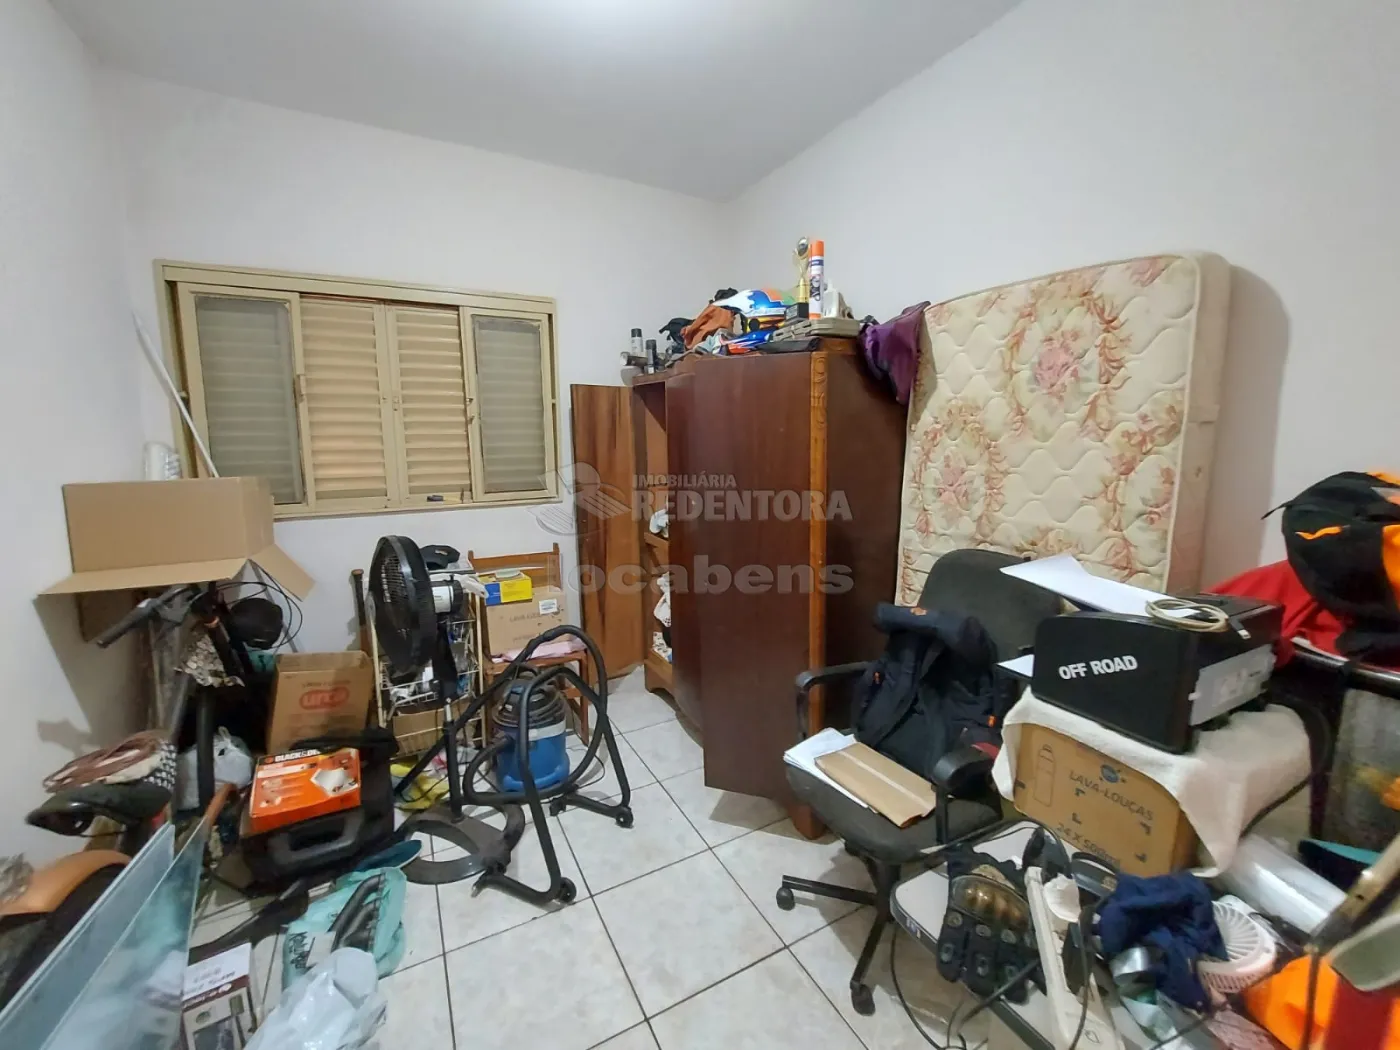 Comprar Casa / Padrão em São José do Rio Preto apenas R$ 320.000,00 - Foto 4